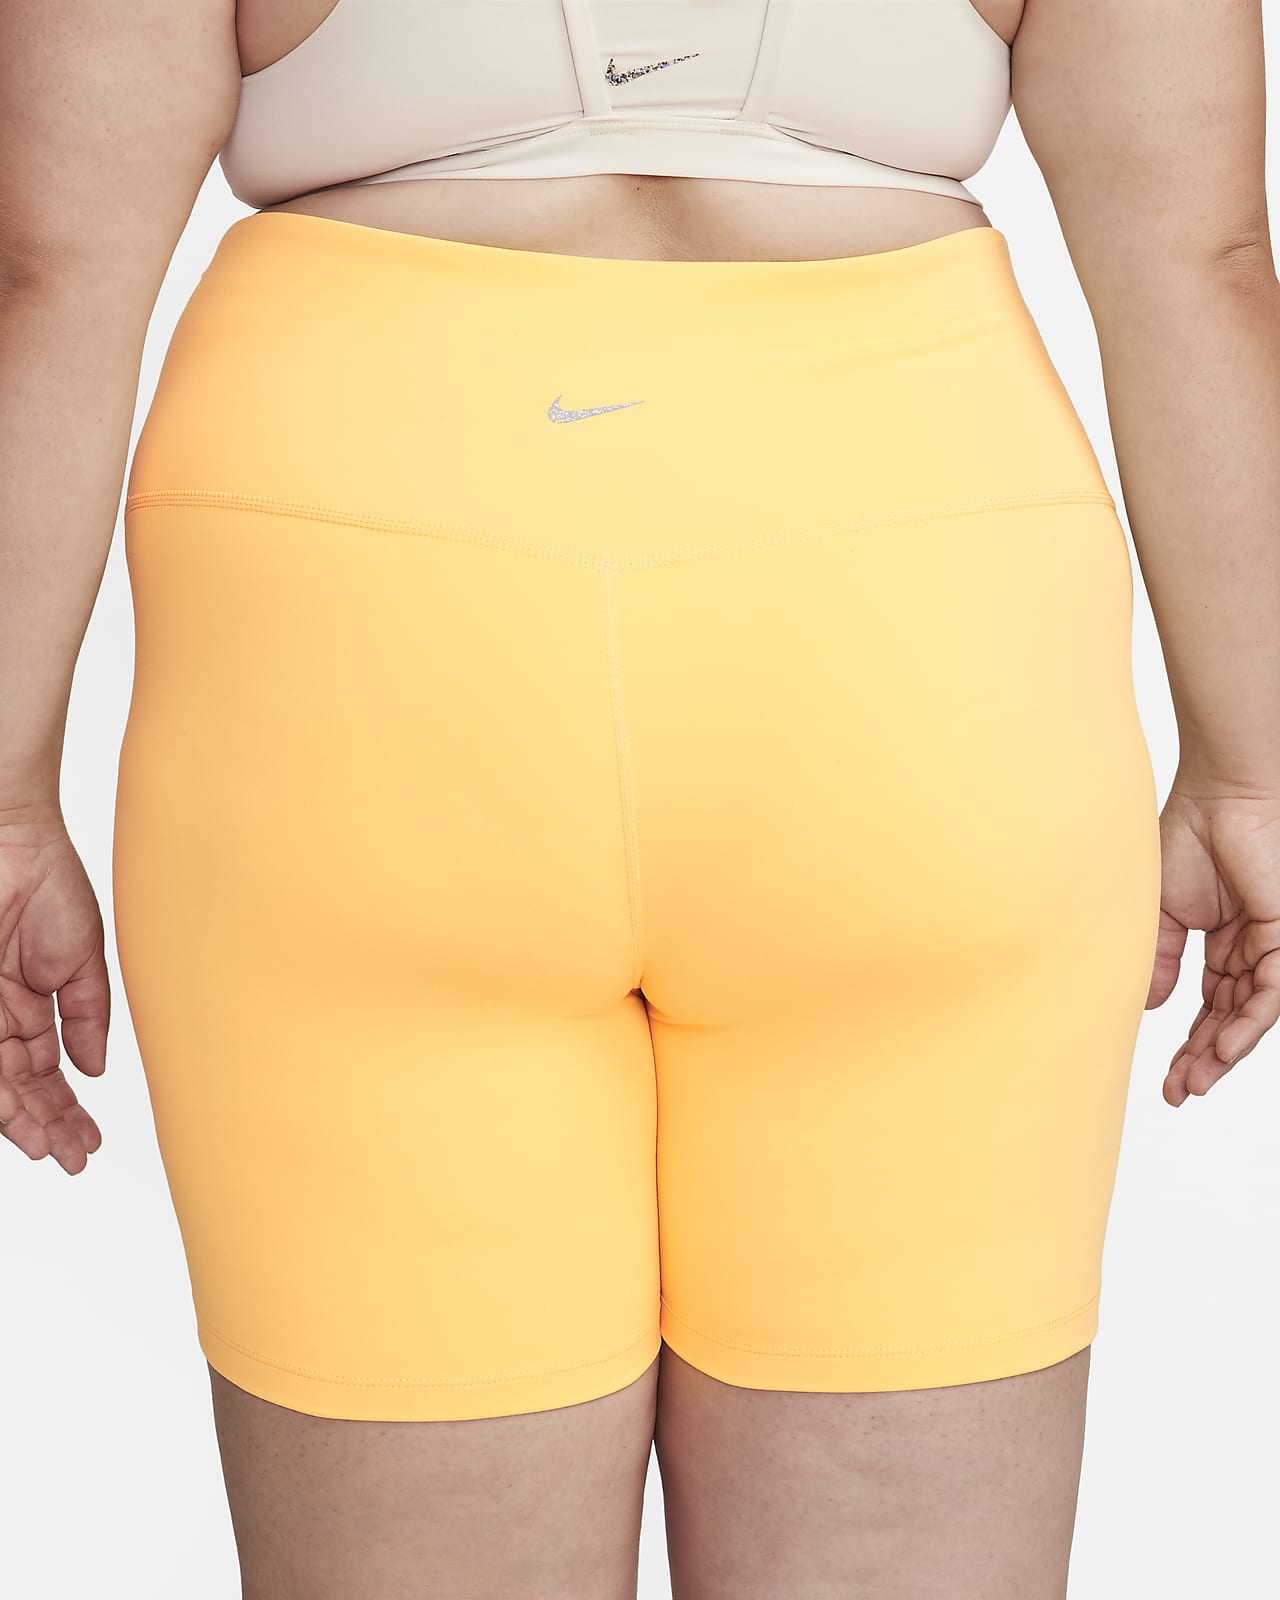 Nike Yoga Women's High-Waisted 7 Shorts (Plus Size)